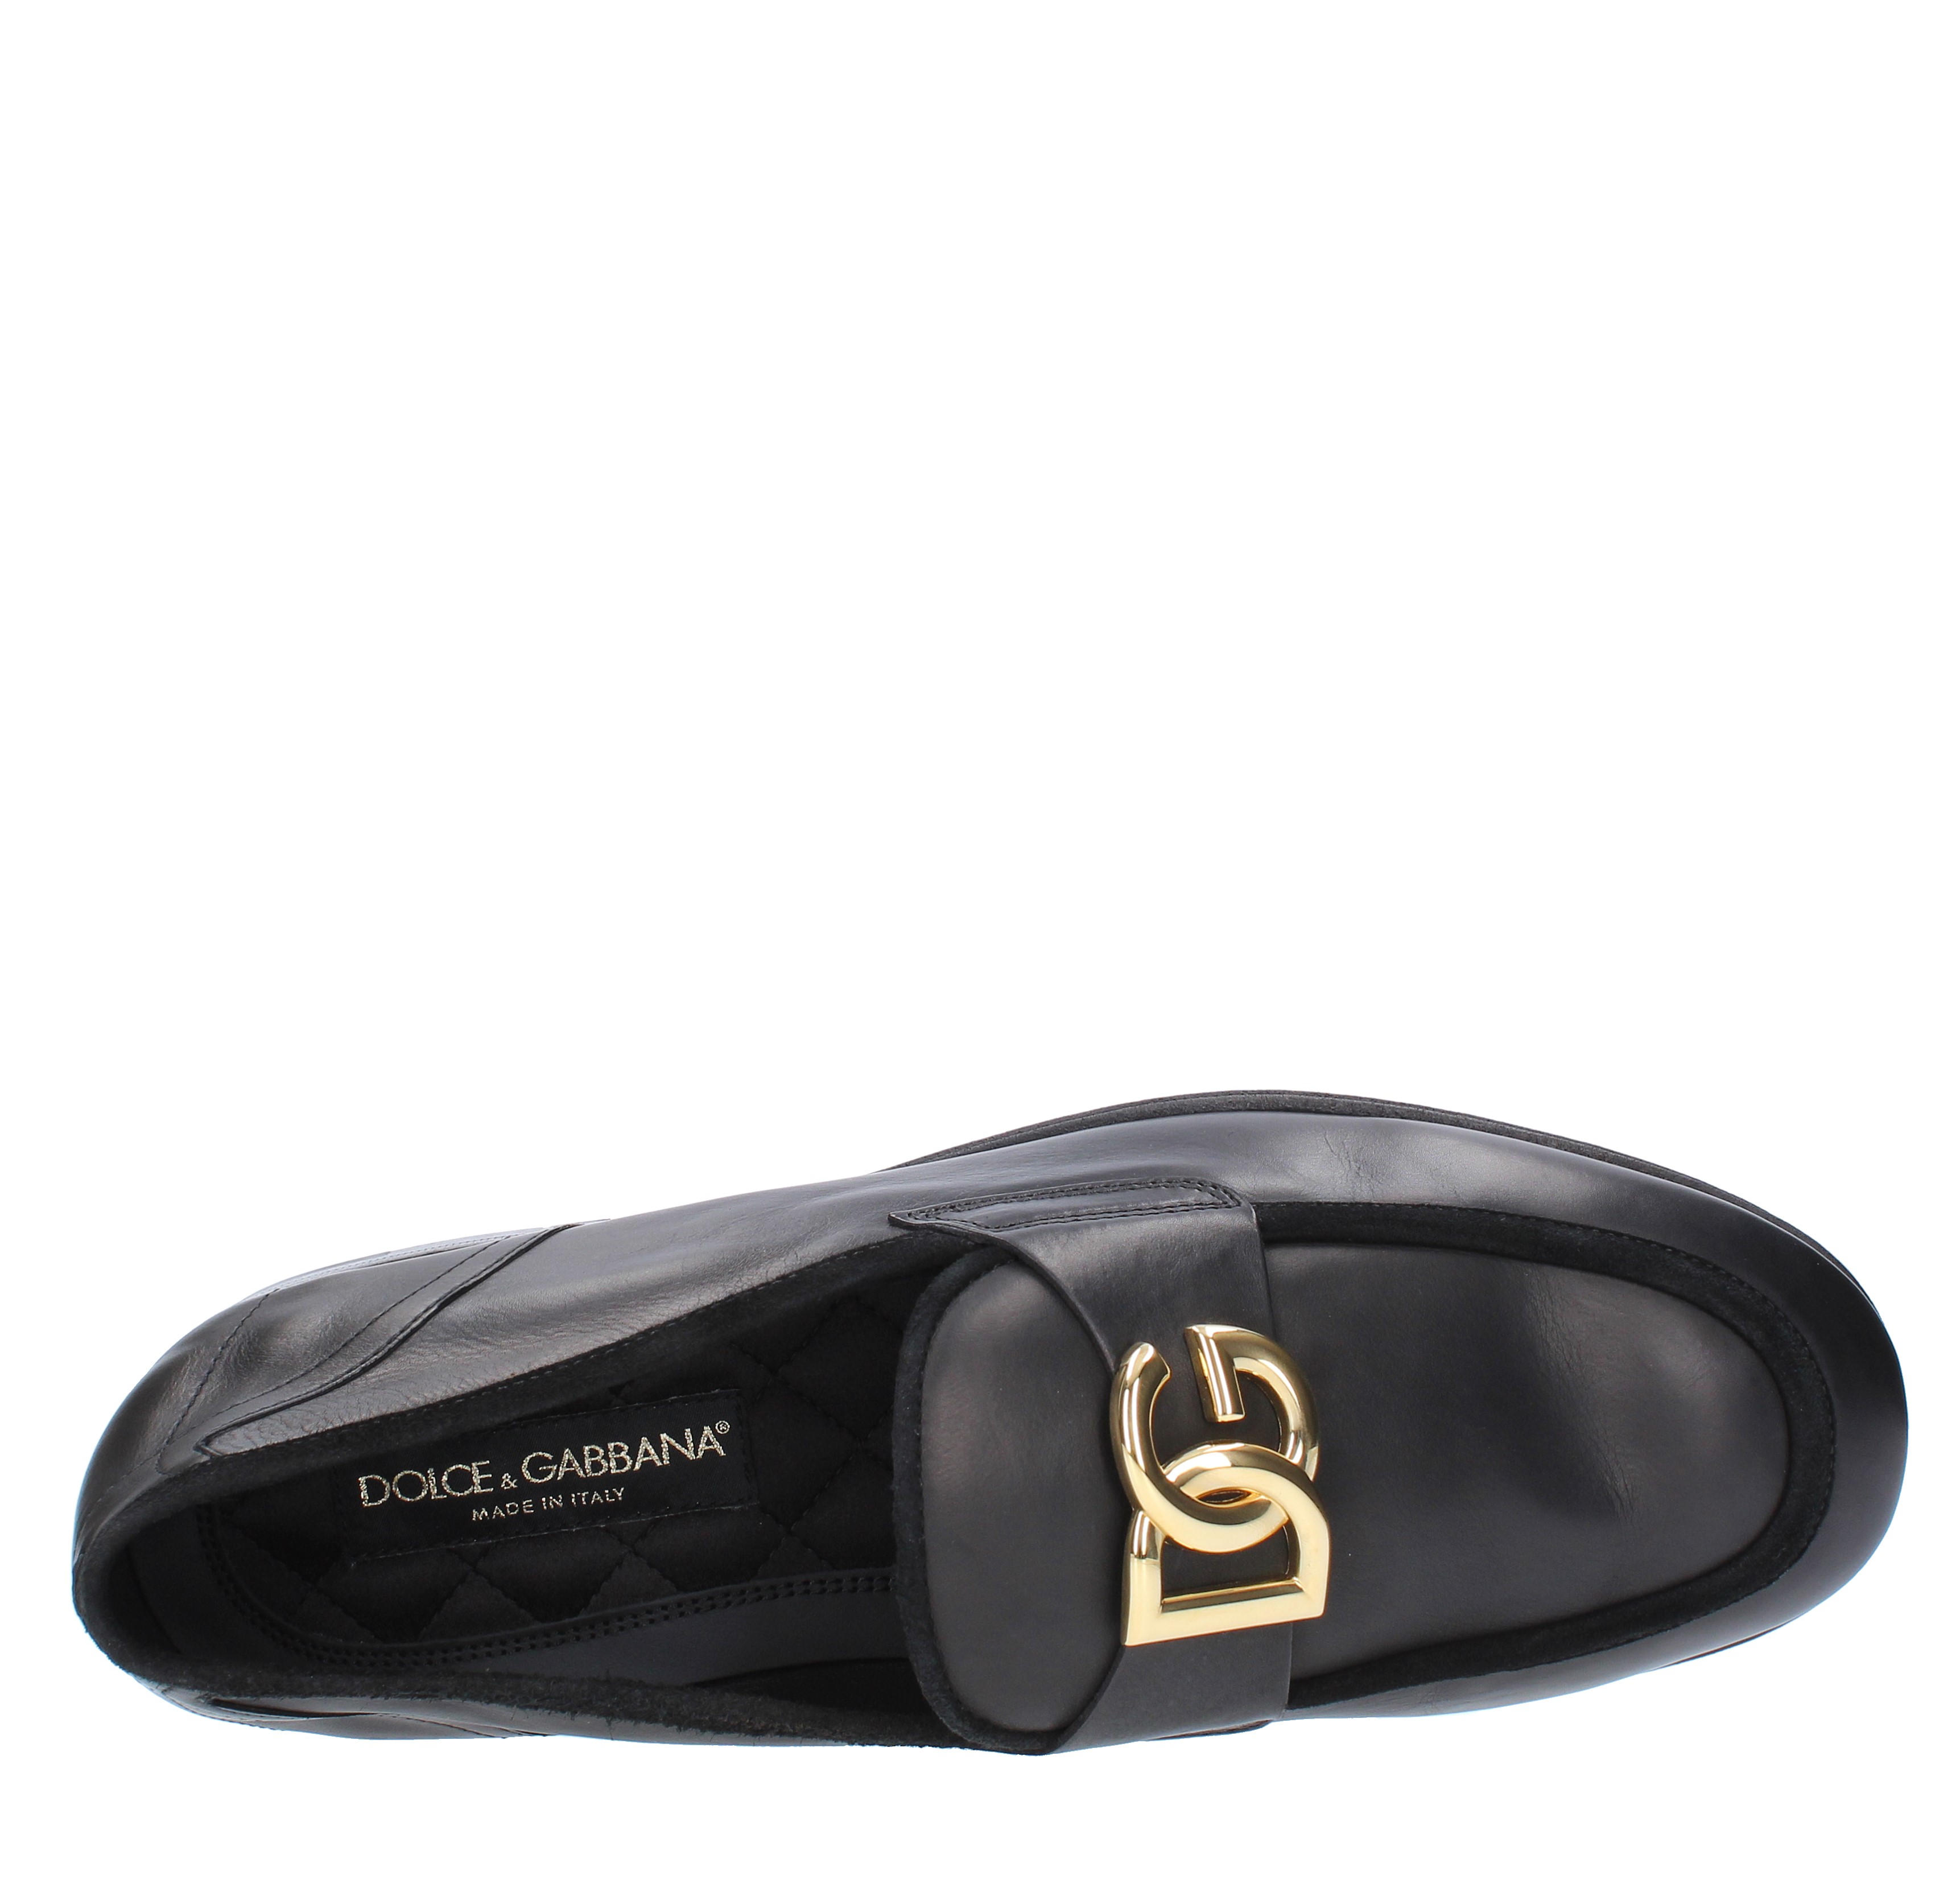 DOLCE & GABBANA ARIOSTO moccasins in calfskin with suede piping -  DOLCE&GABBANA - Ginevra calzature